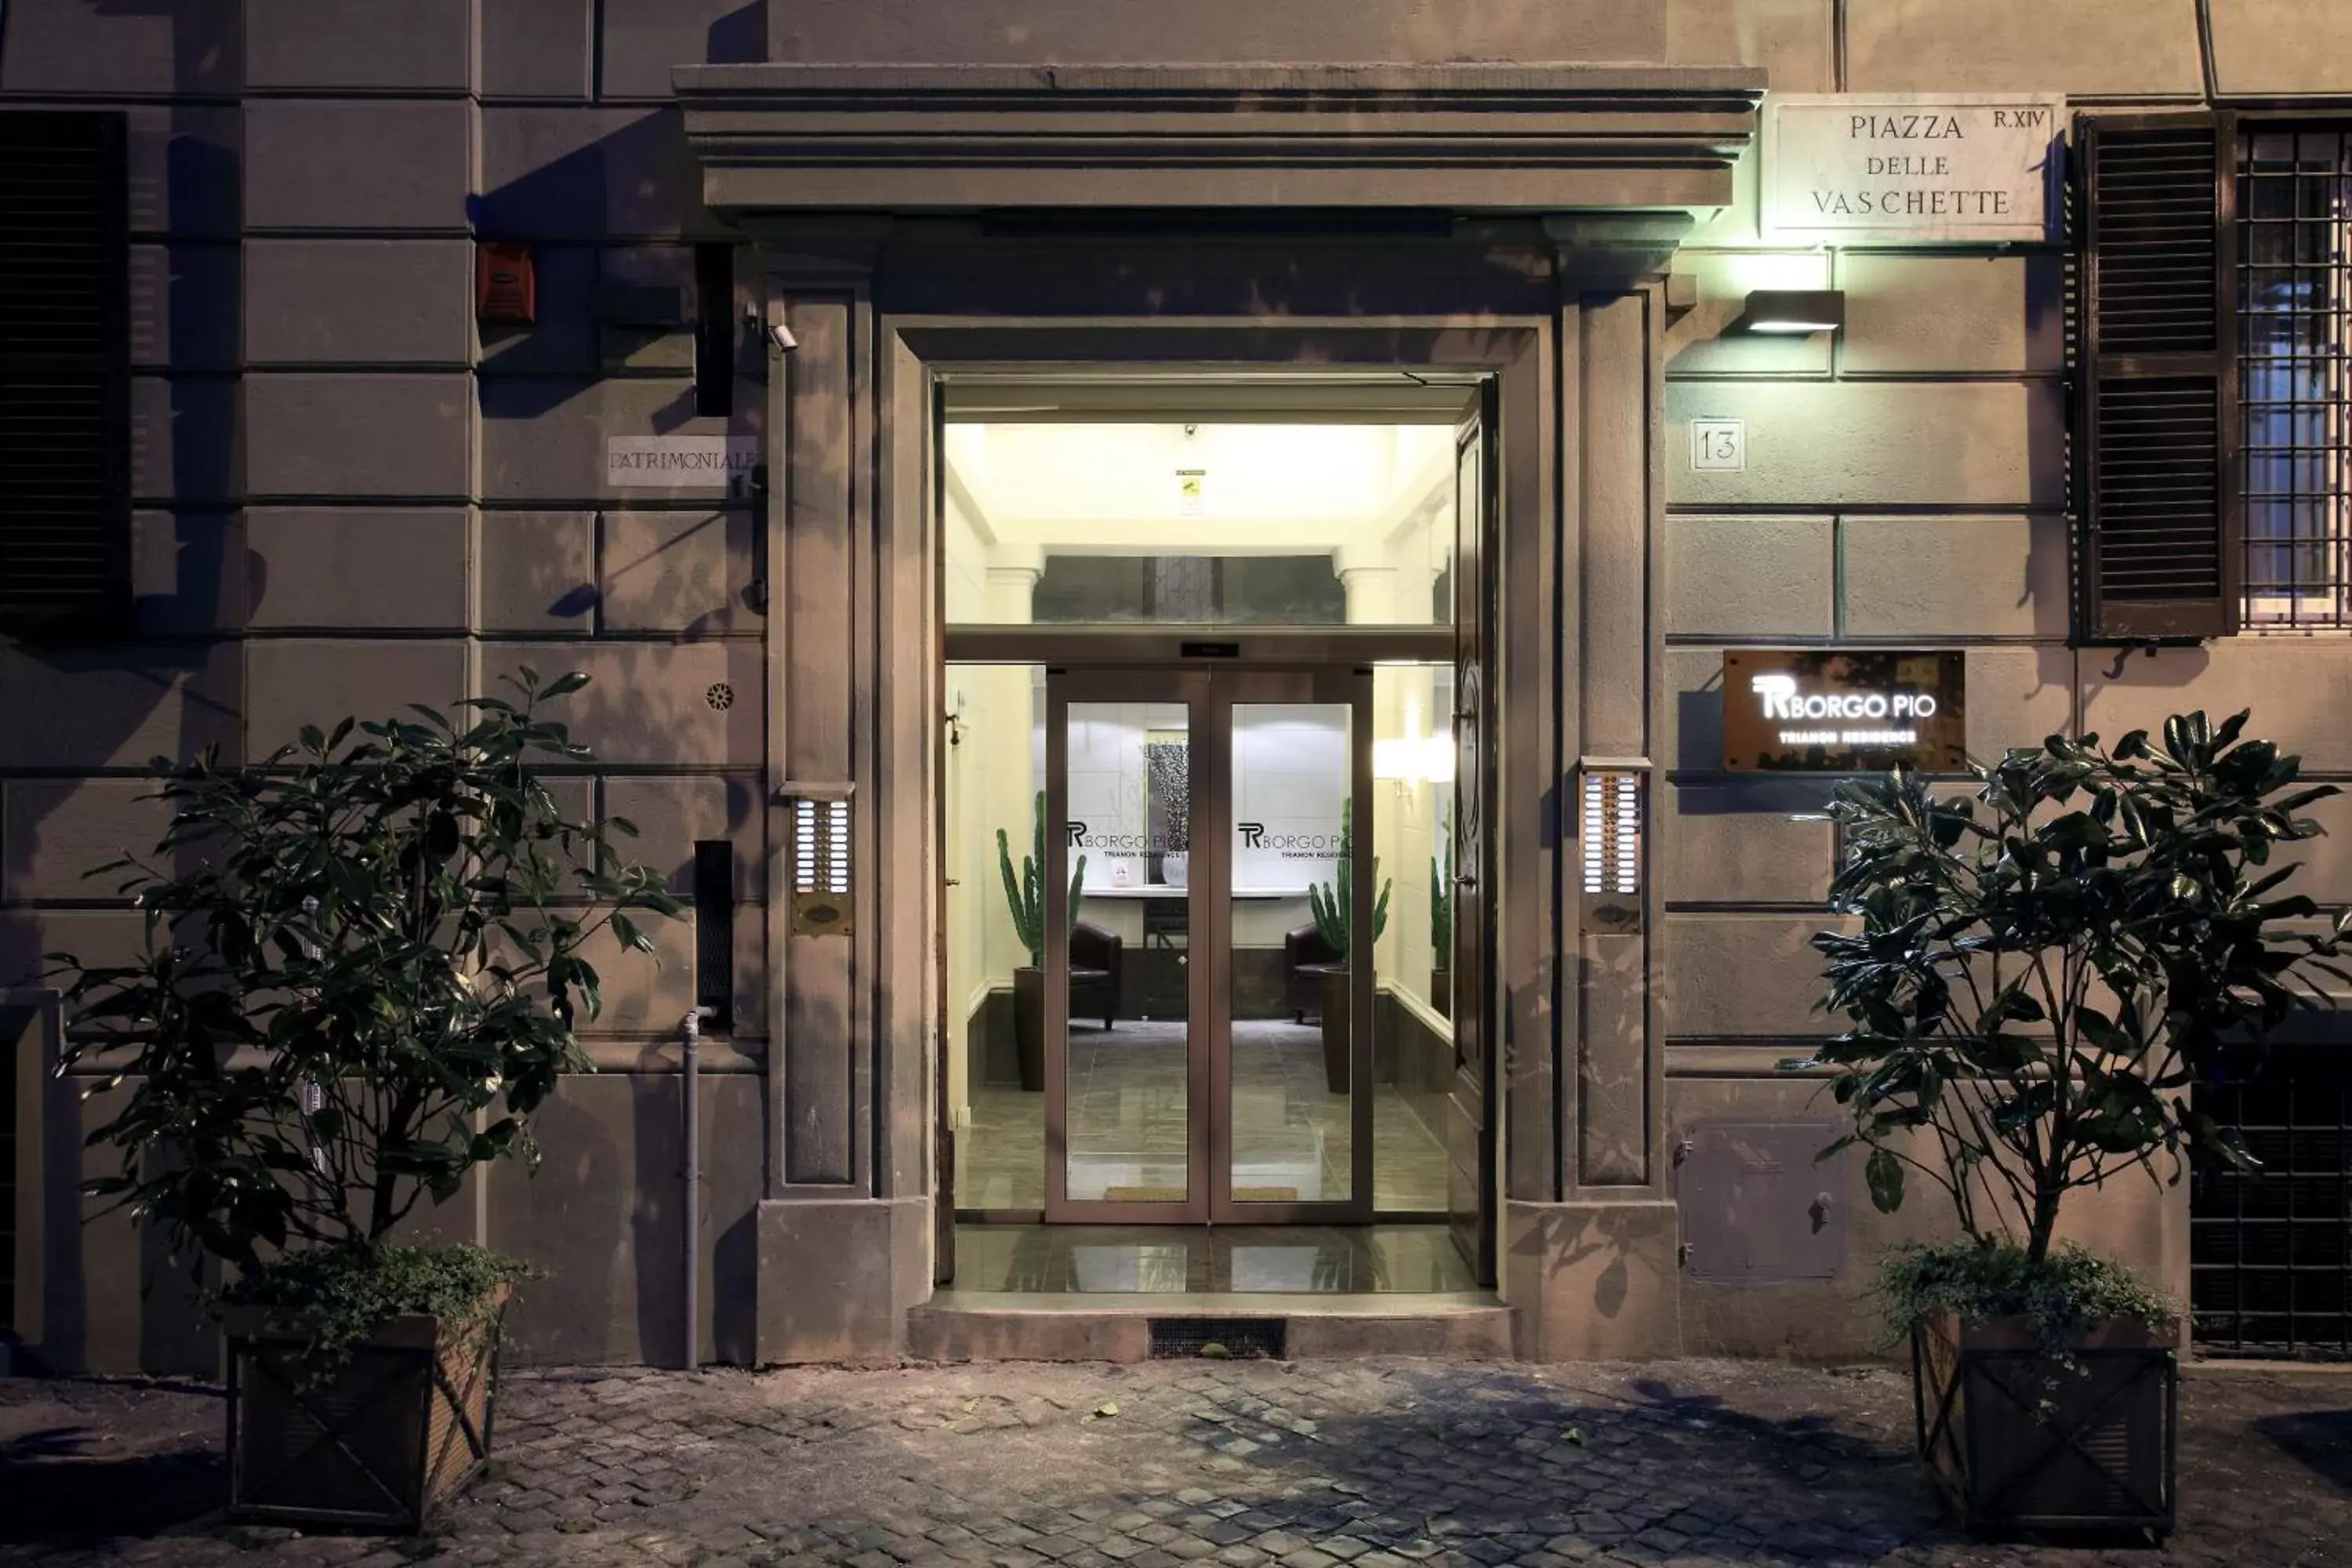 Facade/Entrance in Trianon Borgo Pio Aparthotel